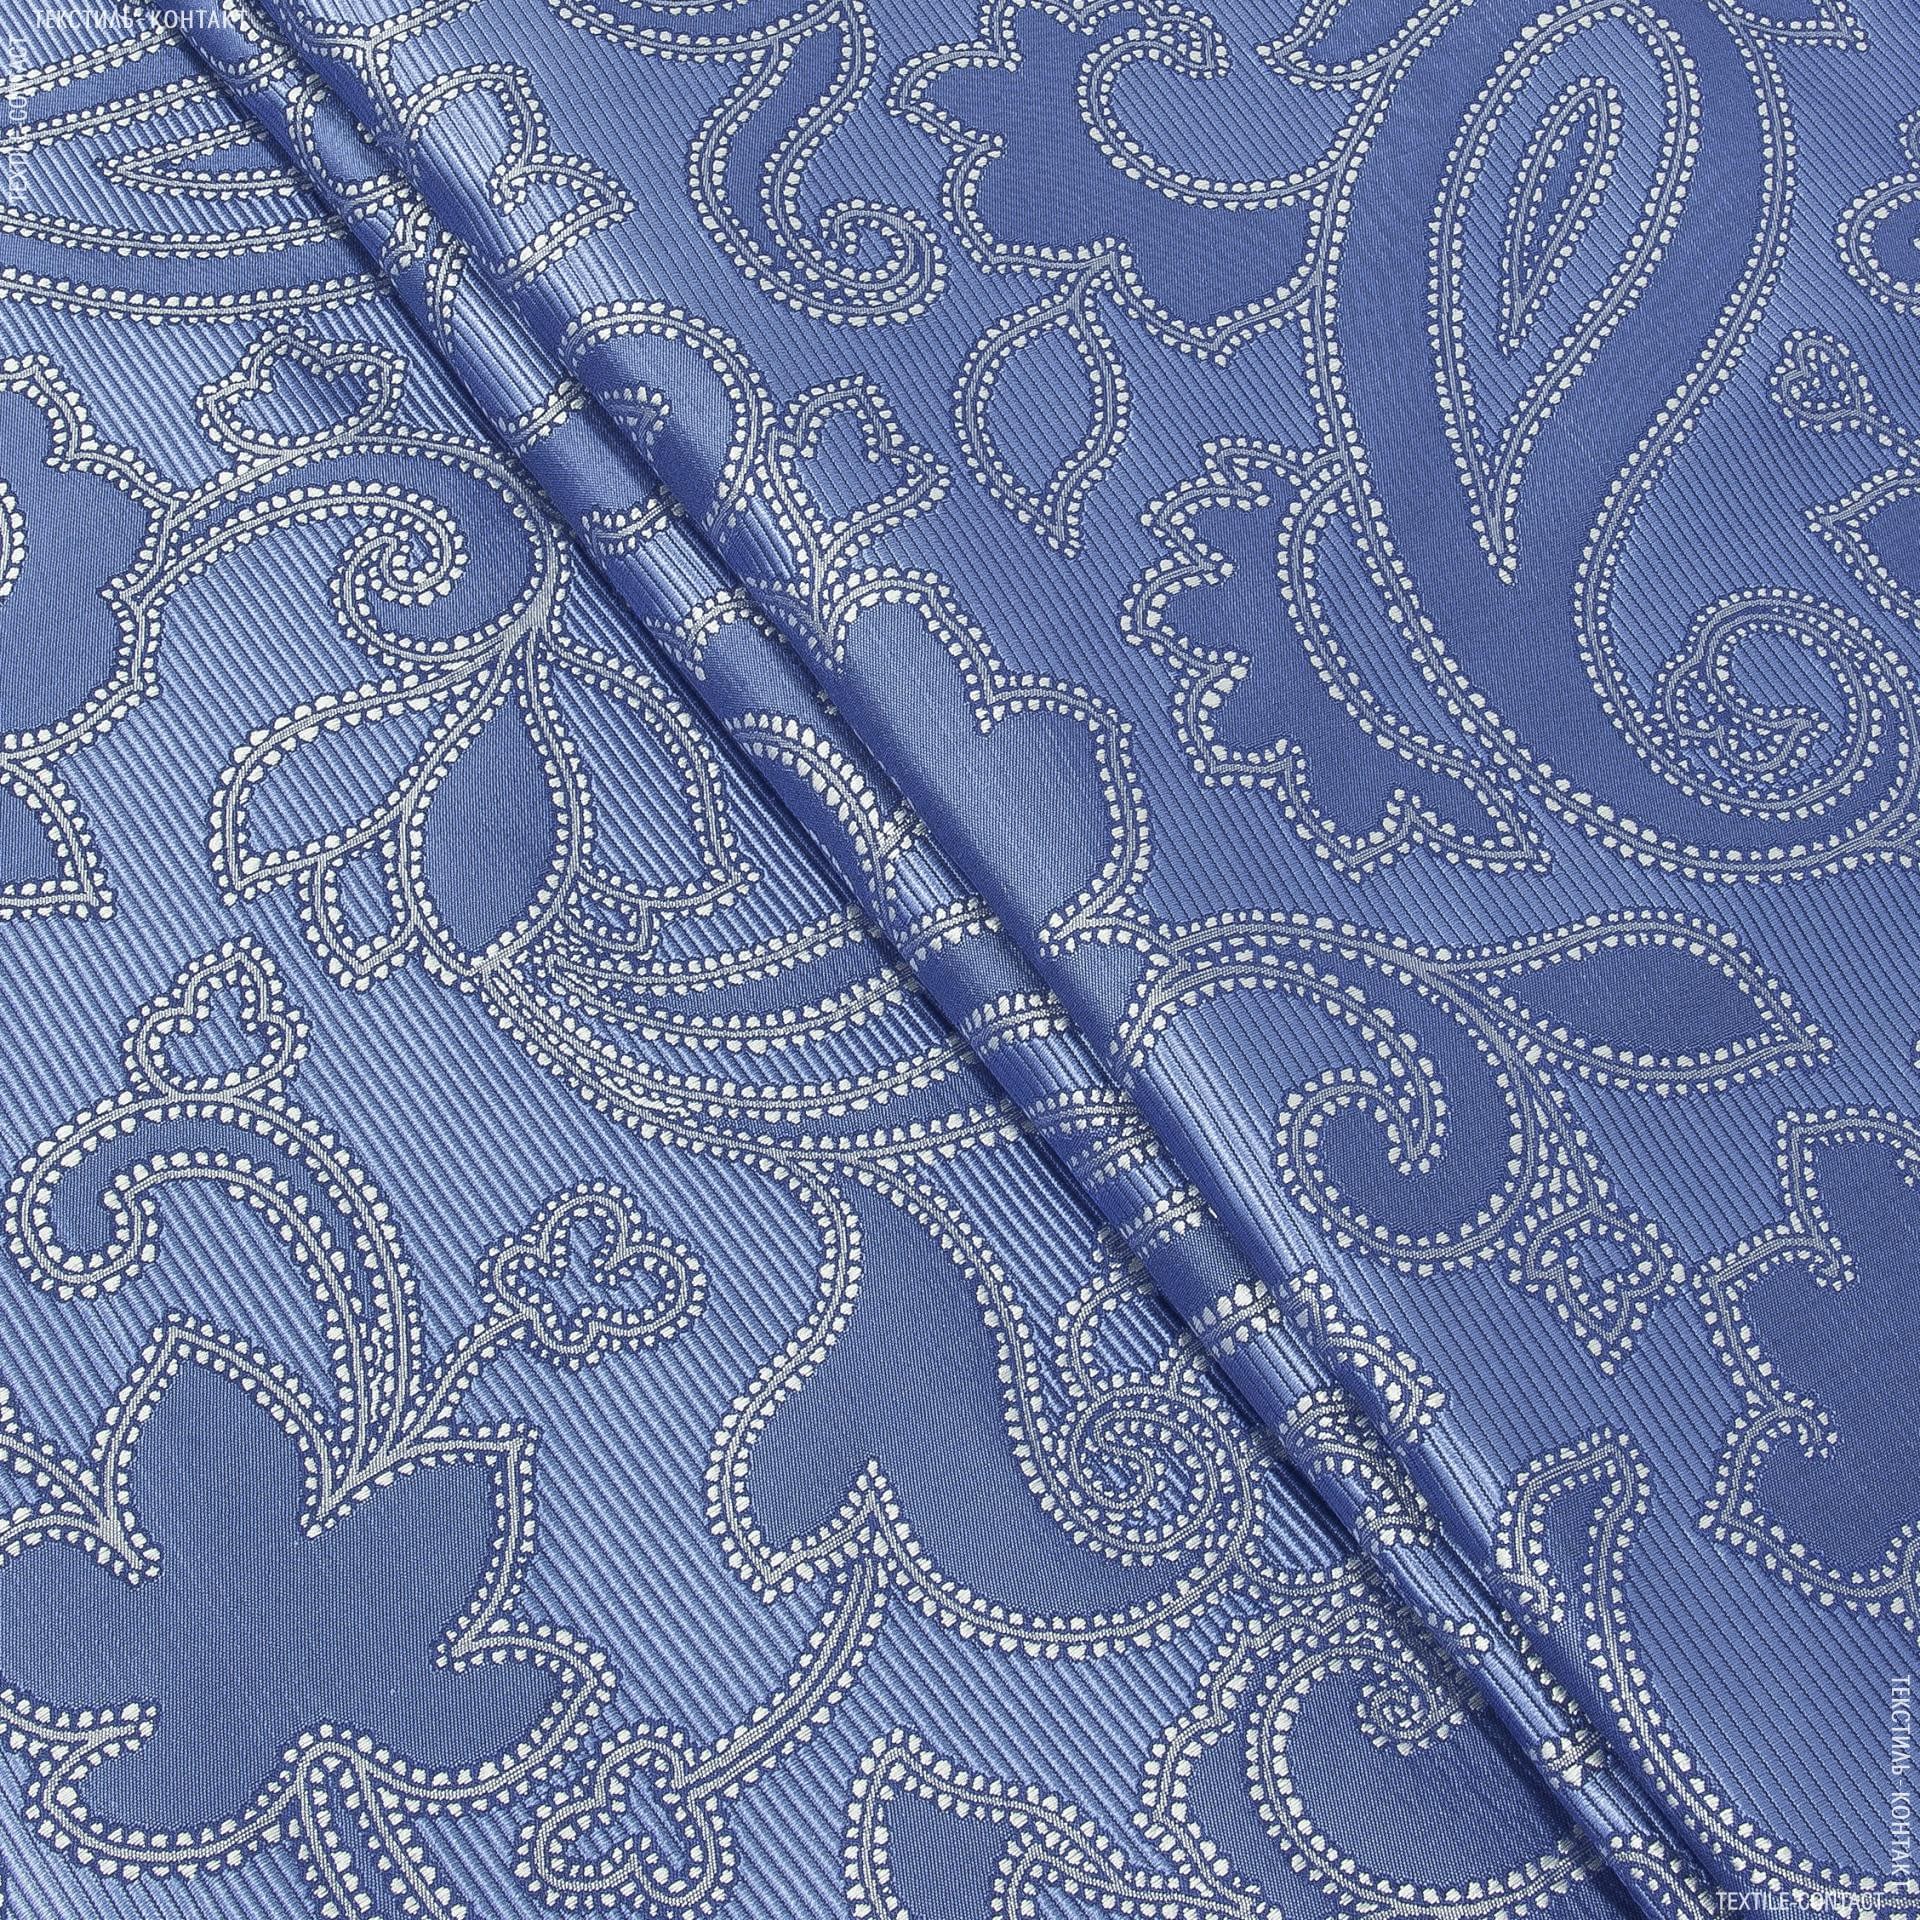 Ткани портьерные ткани - Декоративная ткань Танго т.голубой